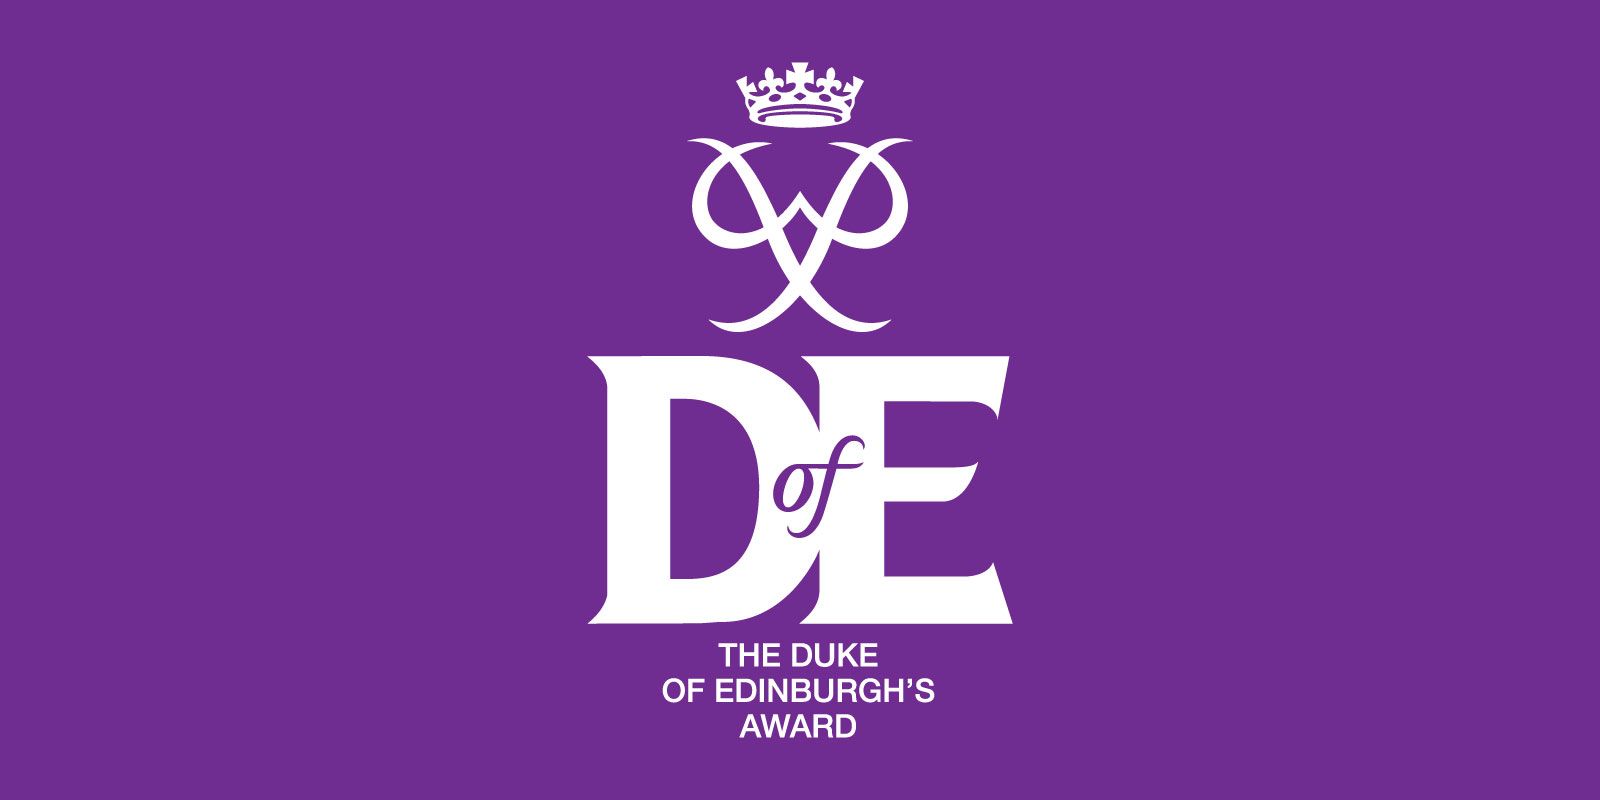 DofE awards logo